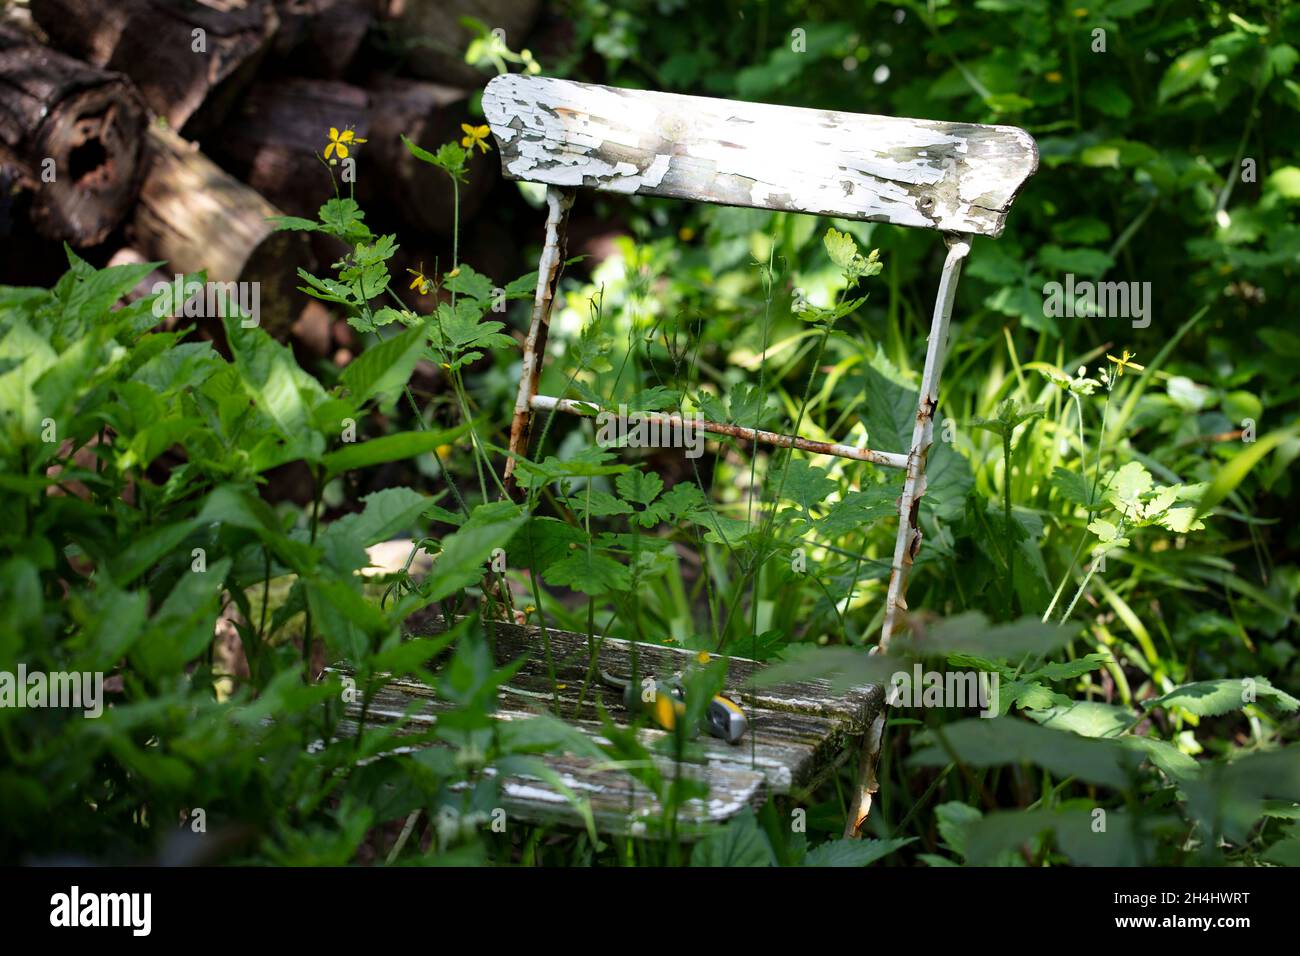 Alter, verwitterter, rostiger Stuhl, BEI dem der weiße Abgeblättert ist, in einem verwilderten Garten in NRW, Deutschland. Banque D'Images